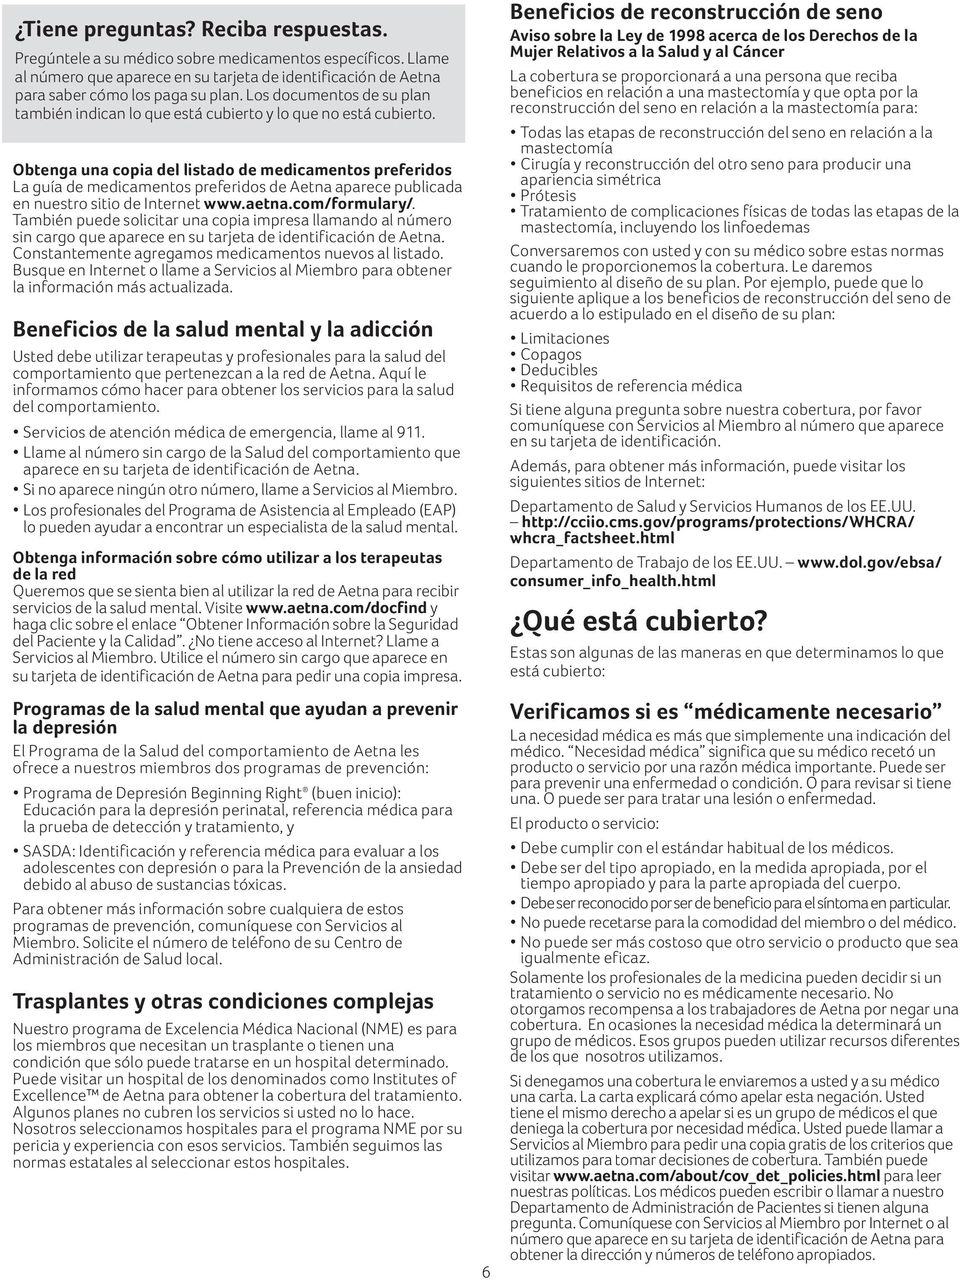 Obtenga una copia del listado de medicamentos preferidos La guía de medicamentos preferidos de Aetna aparece publicada en nuestro sitio de Internet www.aetna.com/formulary/.